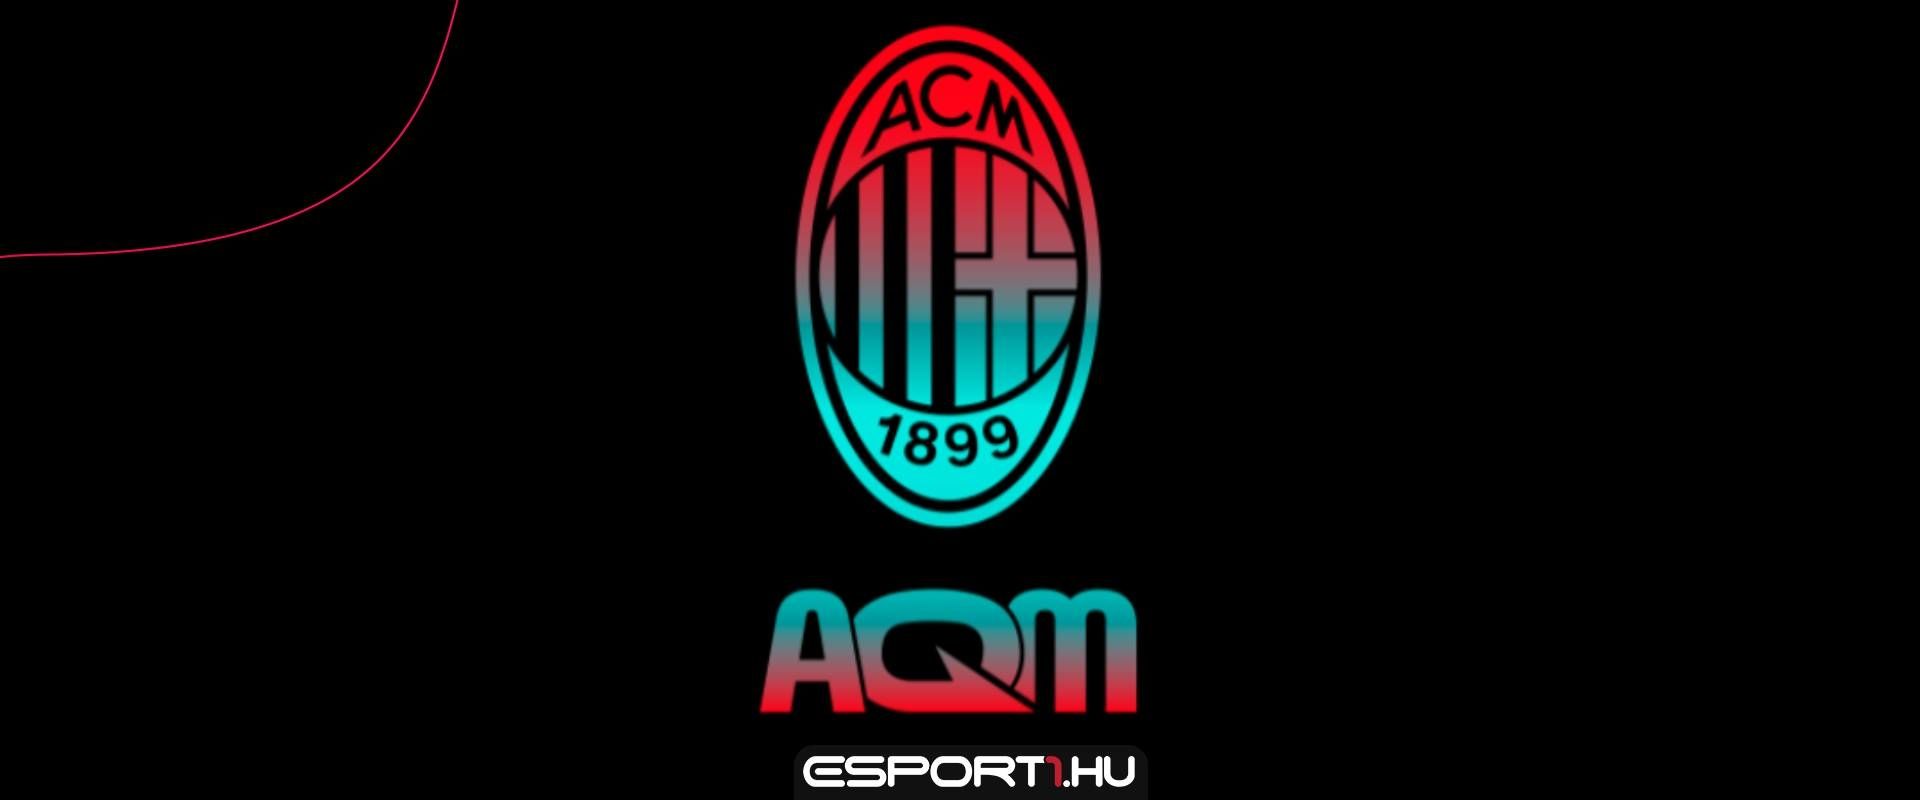 Az AC Milan is beszáll a e-sportba, és FIFA csapatot támogat ettől a szezontól